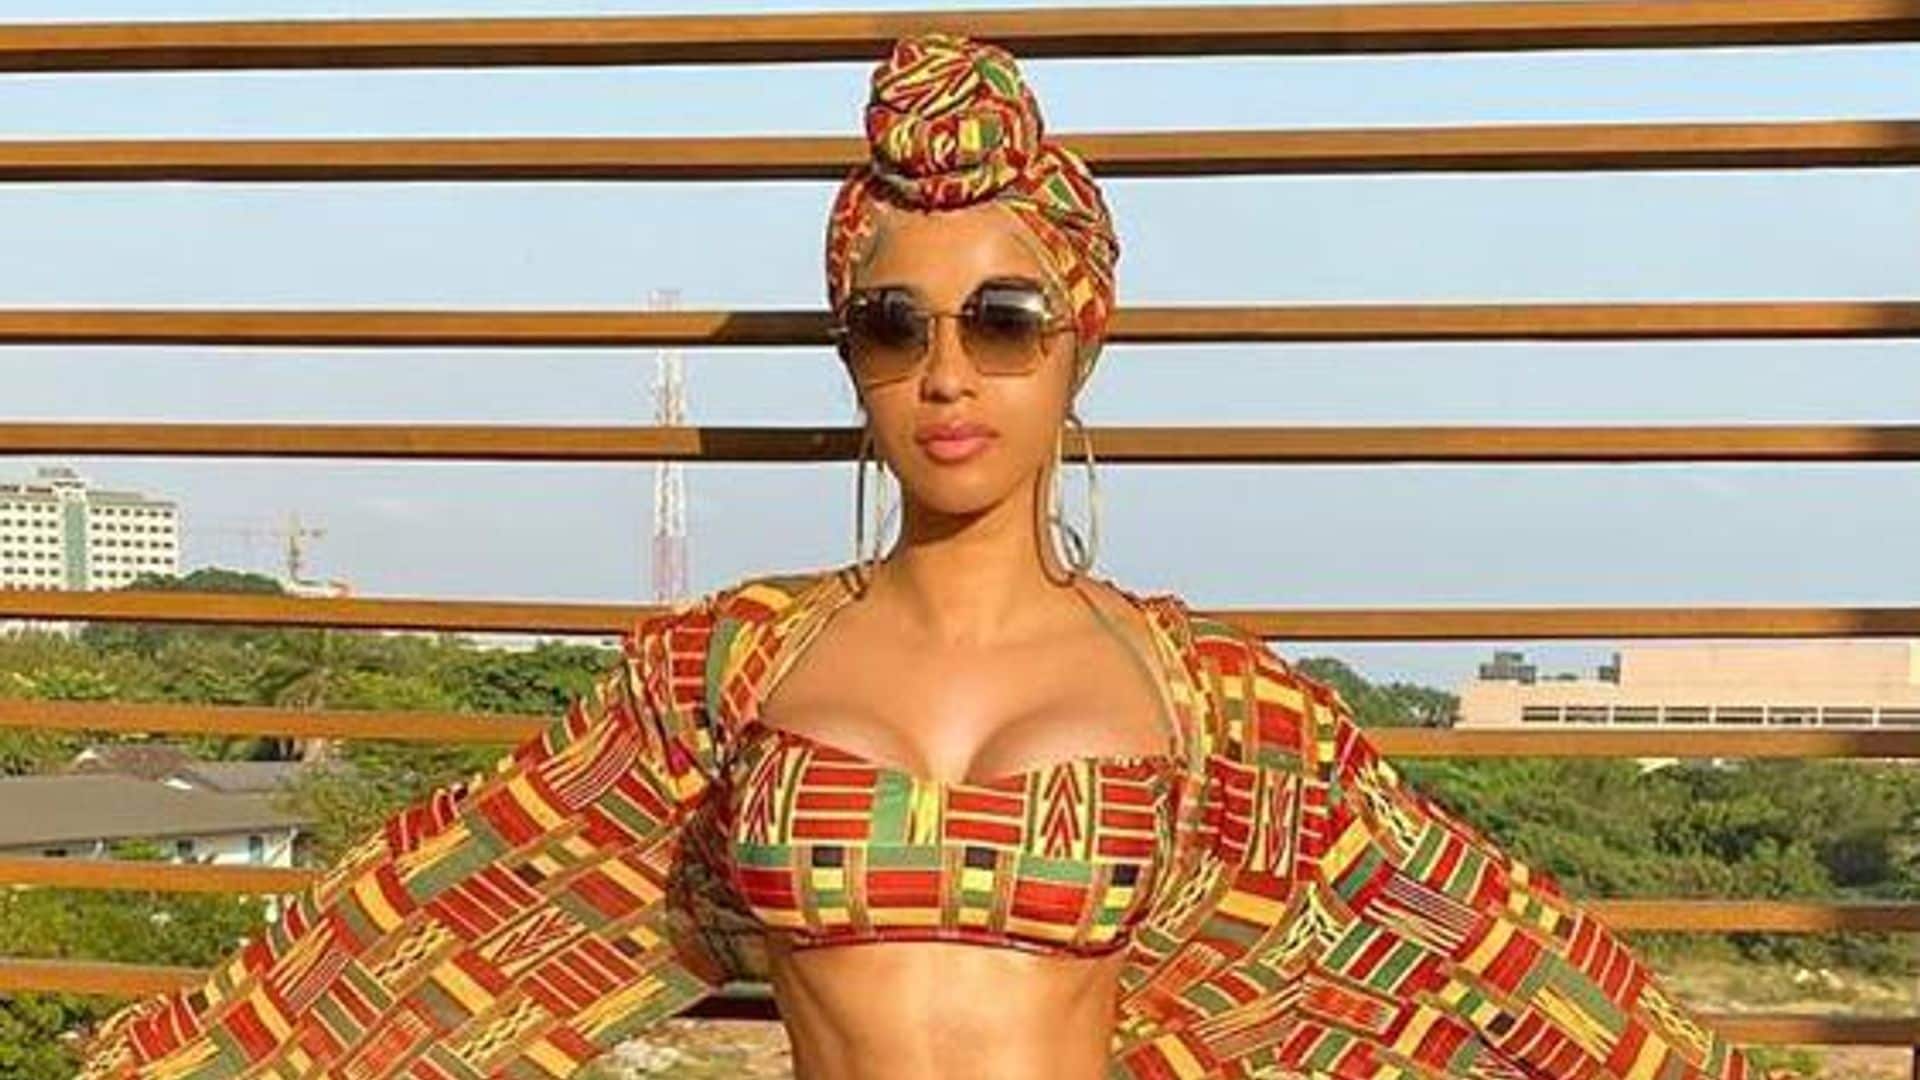 Cardi B shows off incredible bikini body in Ghana